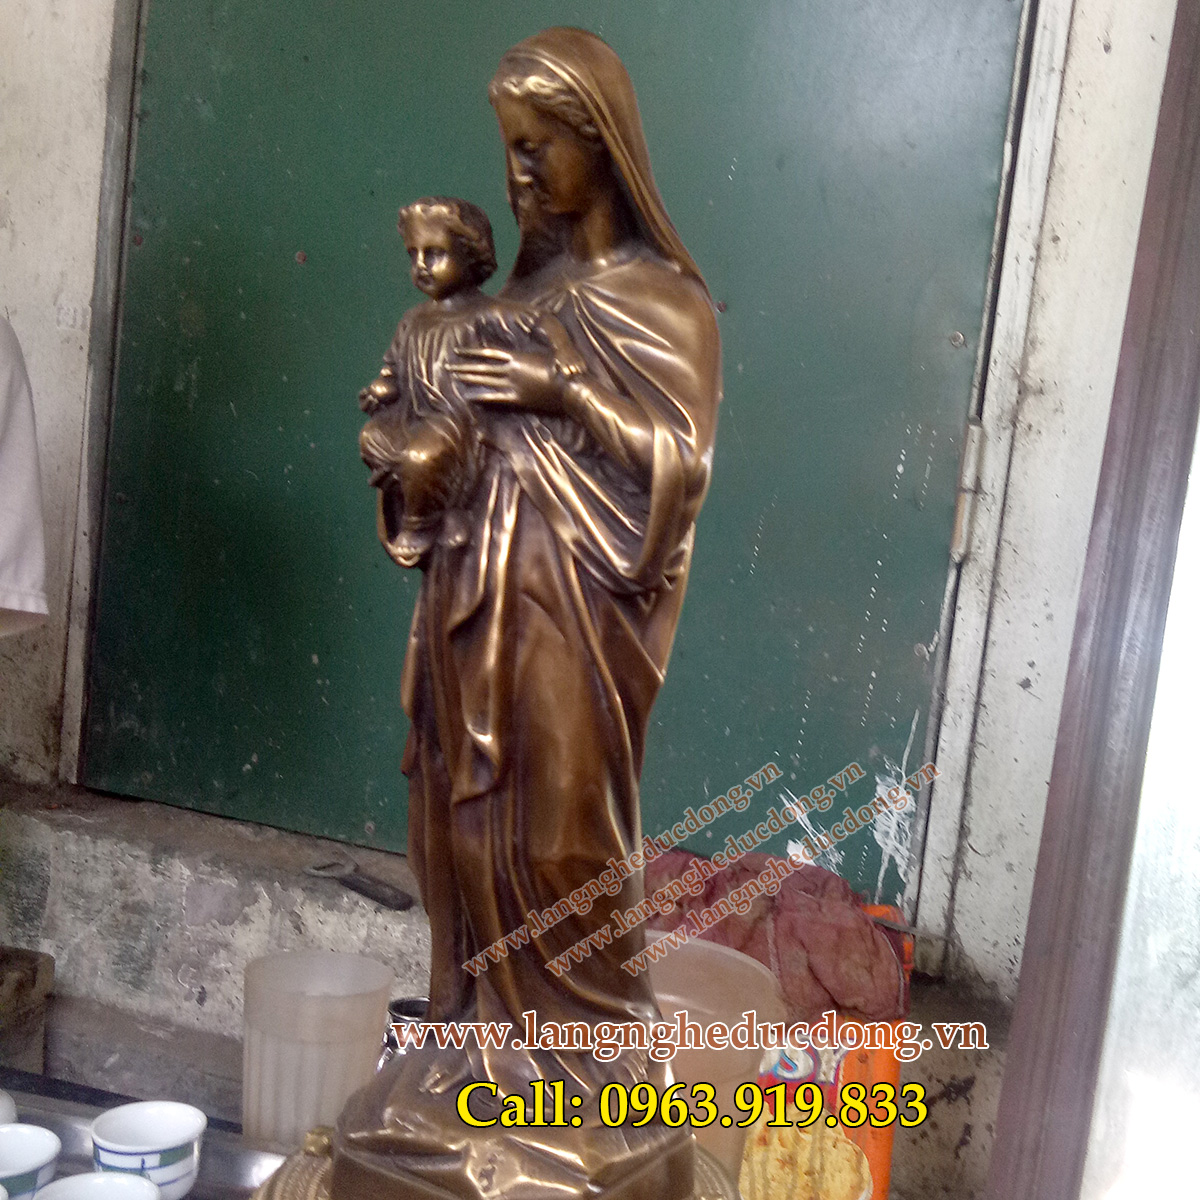 langngheducdong.vn - tượng thiên chúa giáo, tượng đức mẹ maria, tượng đồng